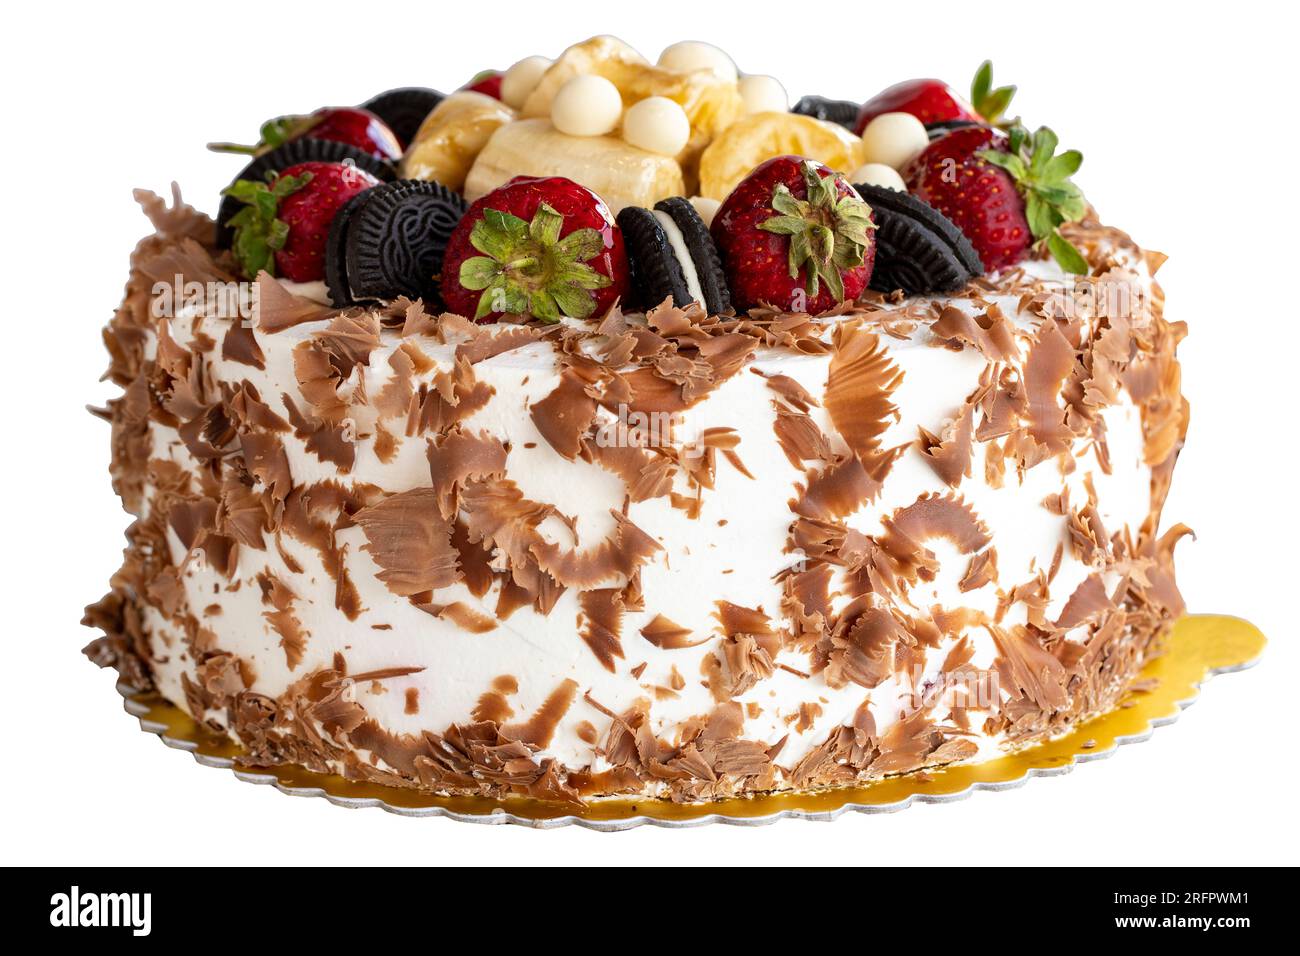 Fruit cake. White chocolate and fruit cake isolated on white background. Celebration and birthday cake. close up Stock Photo